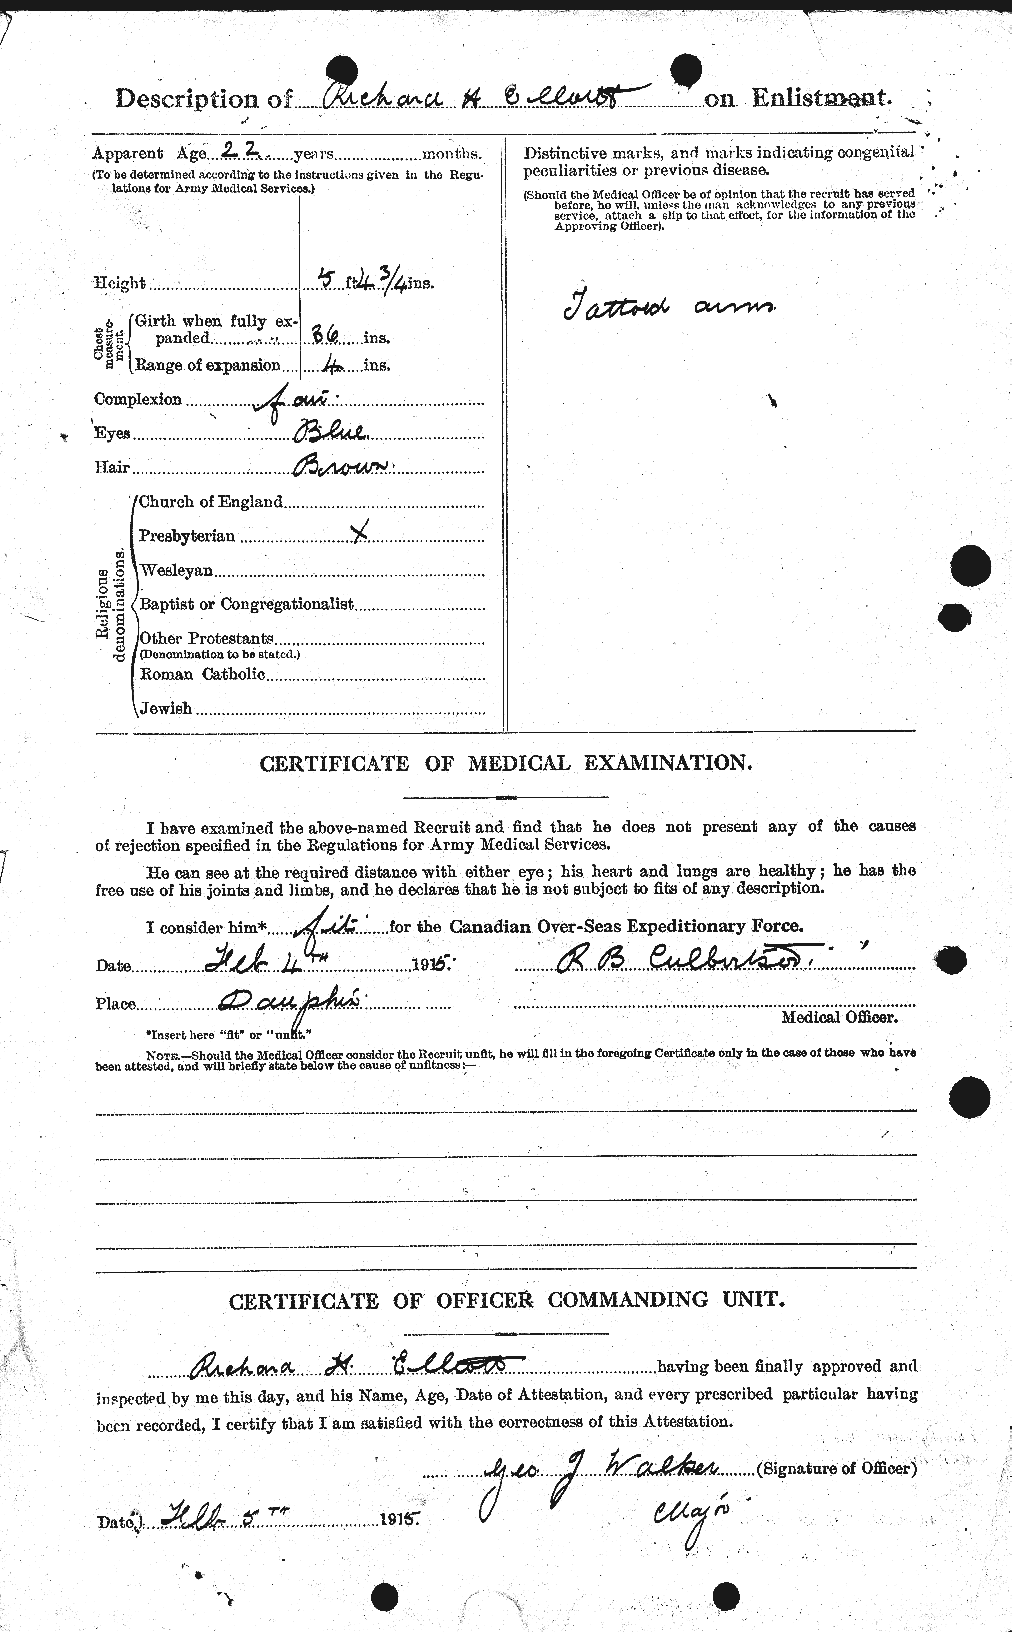 Dossiers du Personnel de la Première Guerre mondiale - CEC 316058b